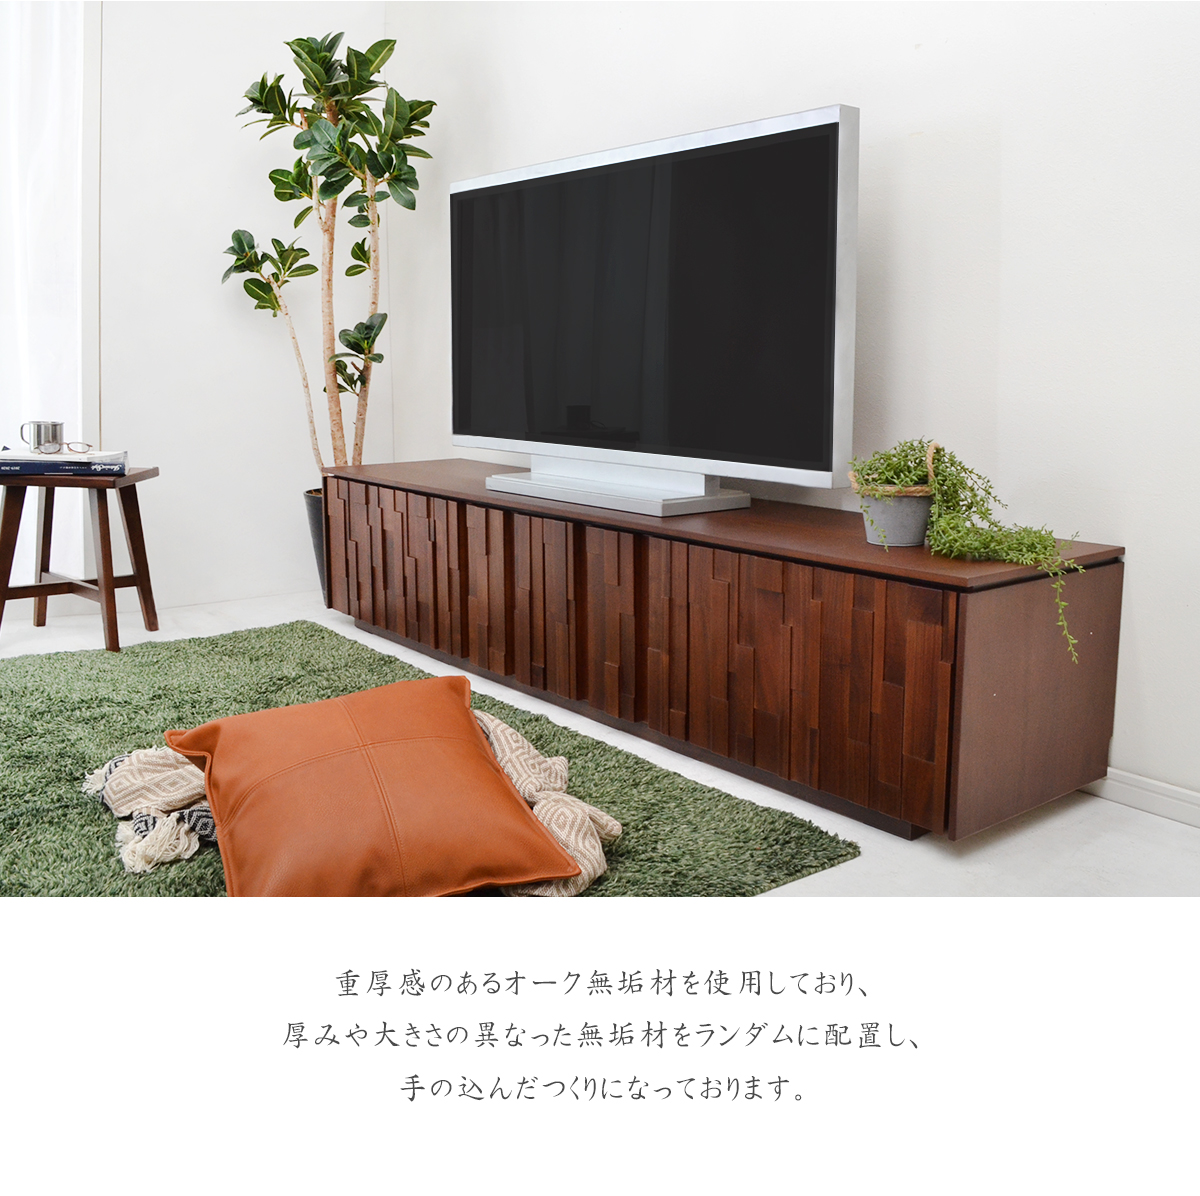 日本産 テレビボード 200 無垢 ウォールナット ブラウン 完成品 収納